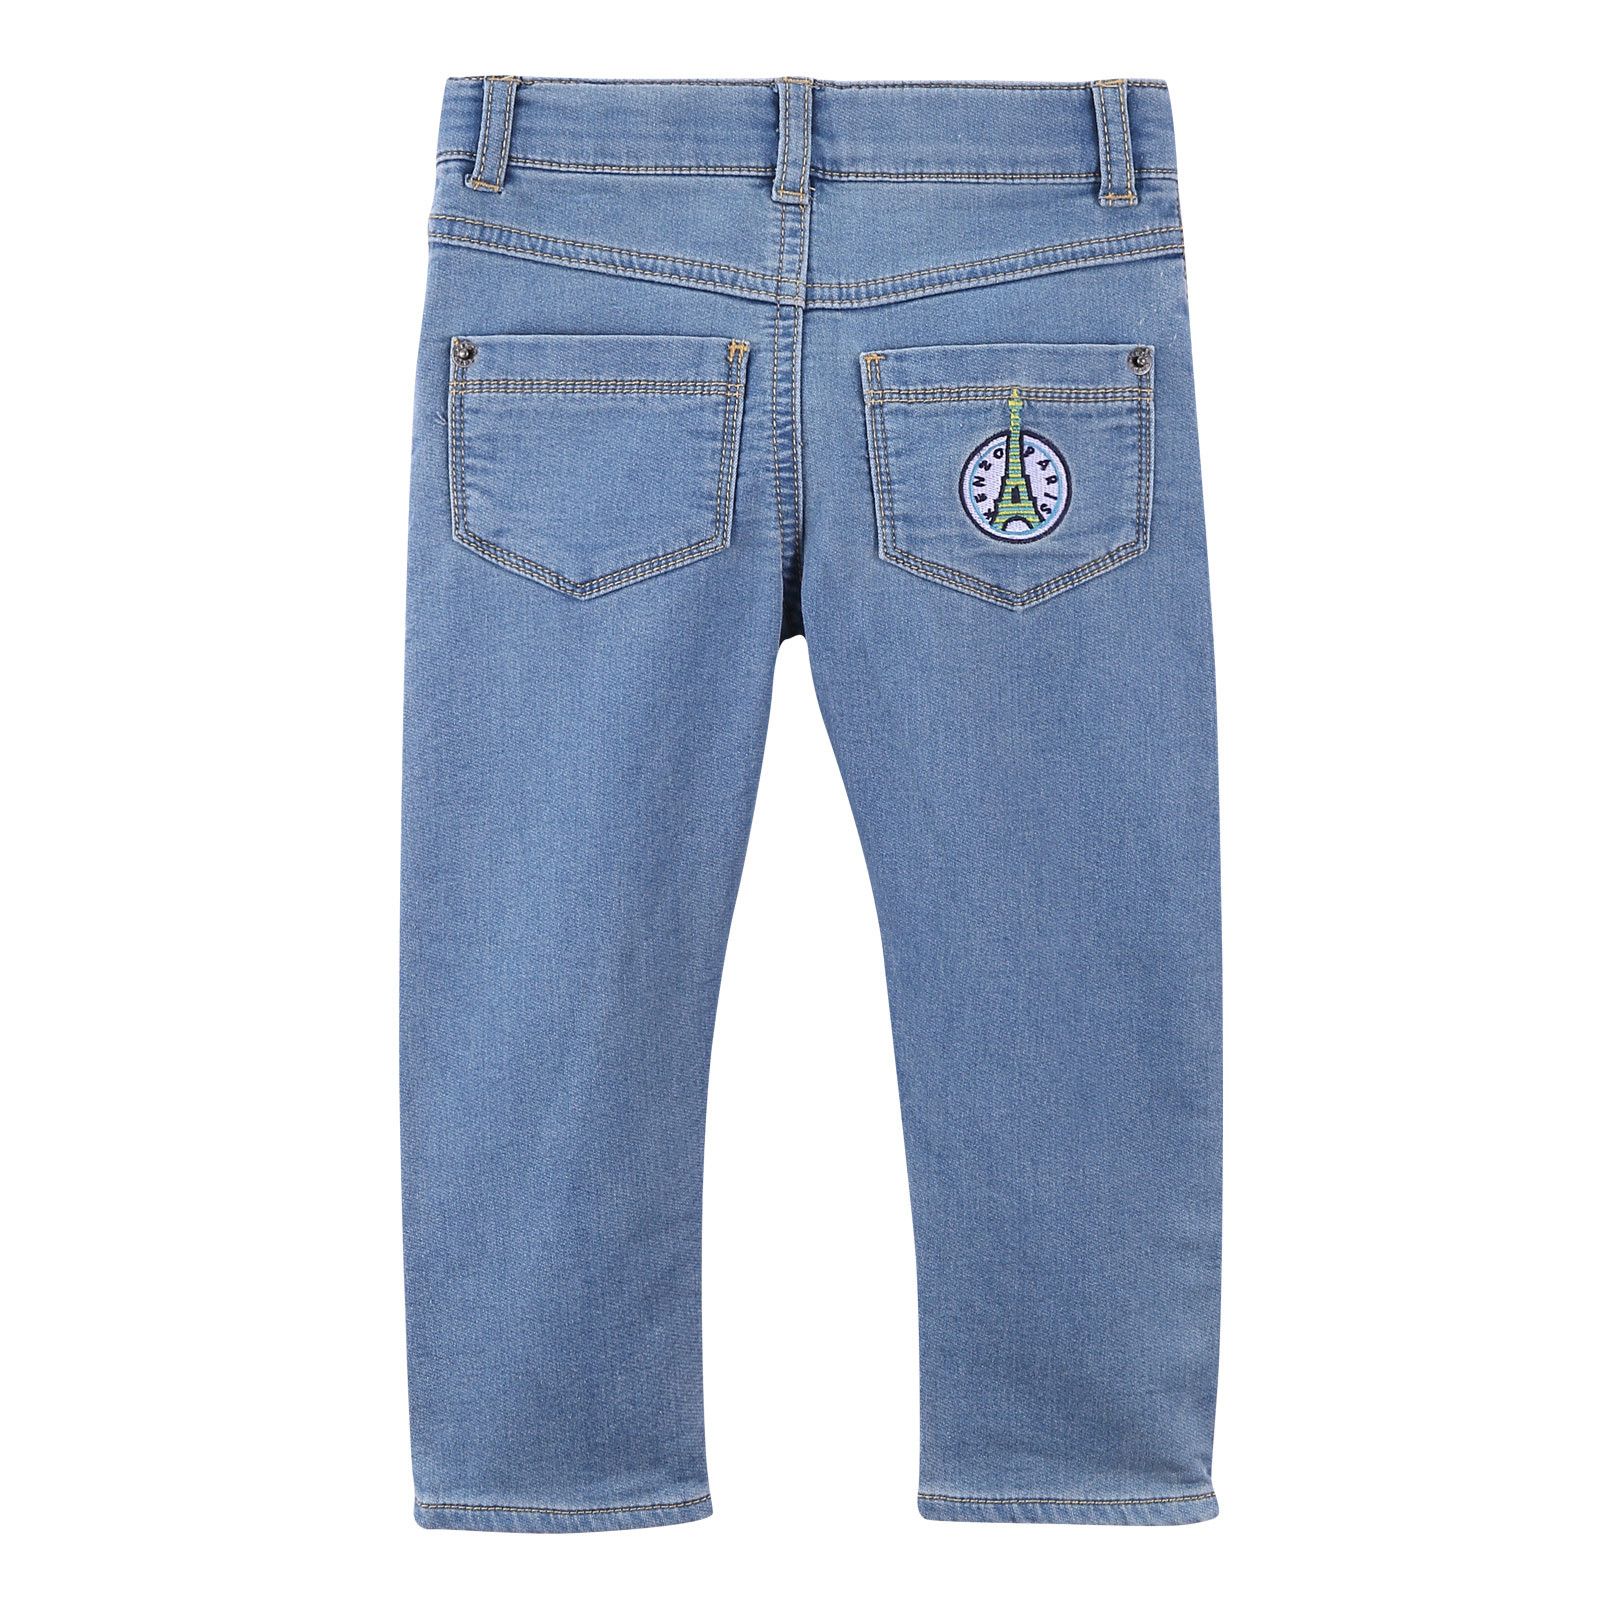 Boys Light Blue Cotton Denim Jeans - CÉMAROSE | Children's Fashion Store - 2